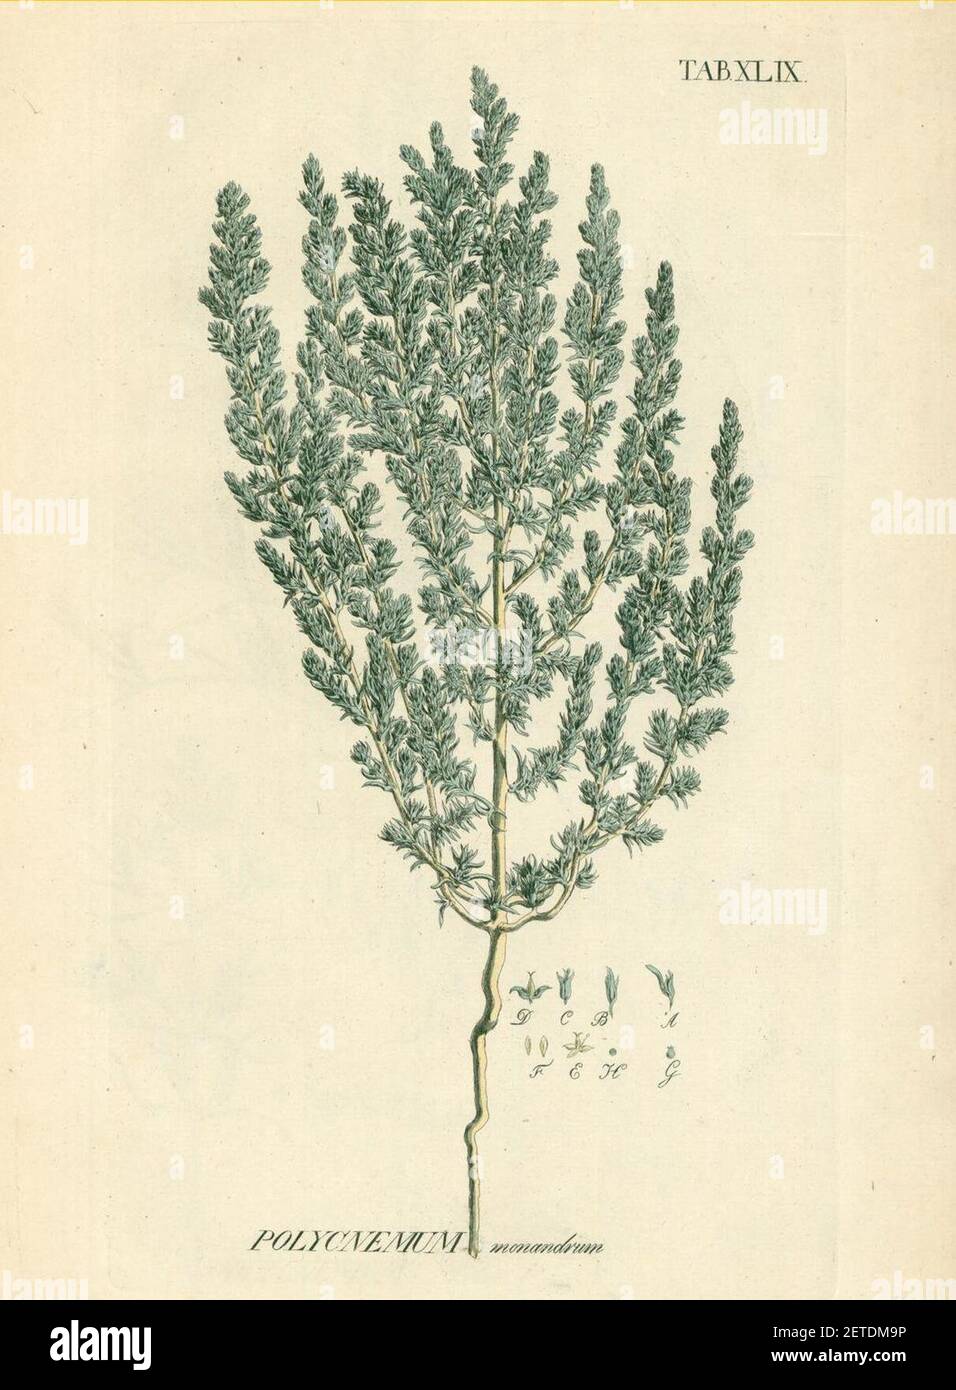 Petrosimonia monandra as Polycnemum monandrum. Stock Photo